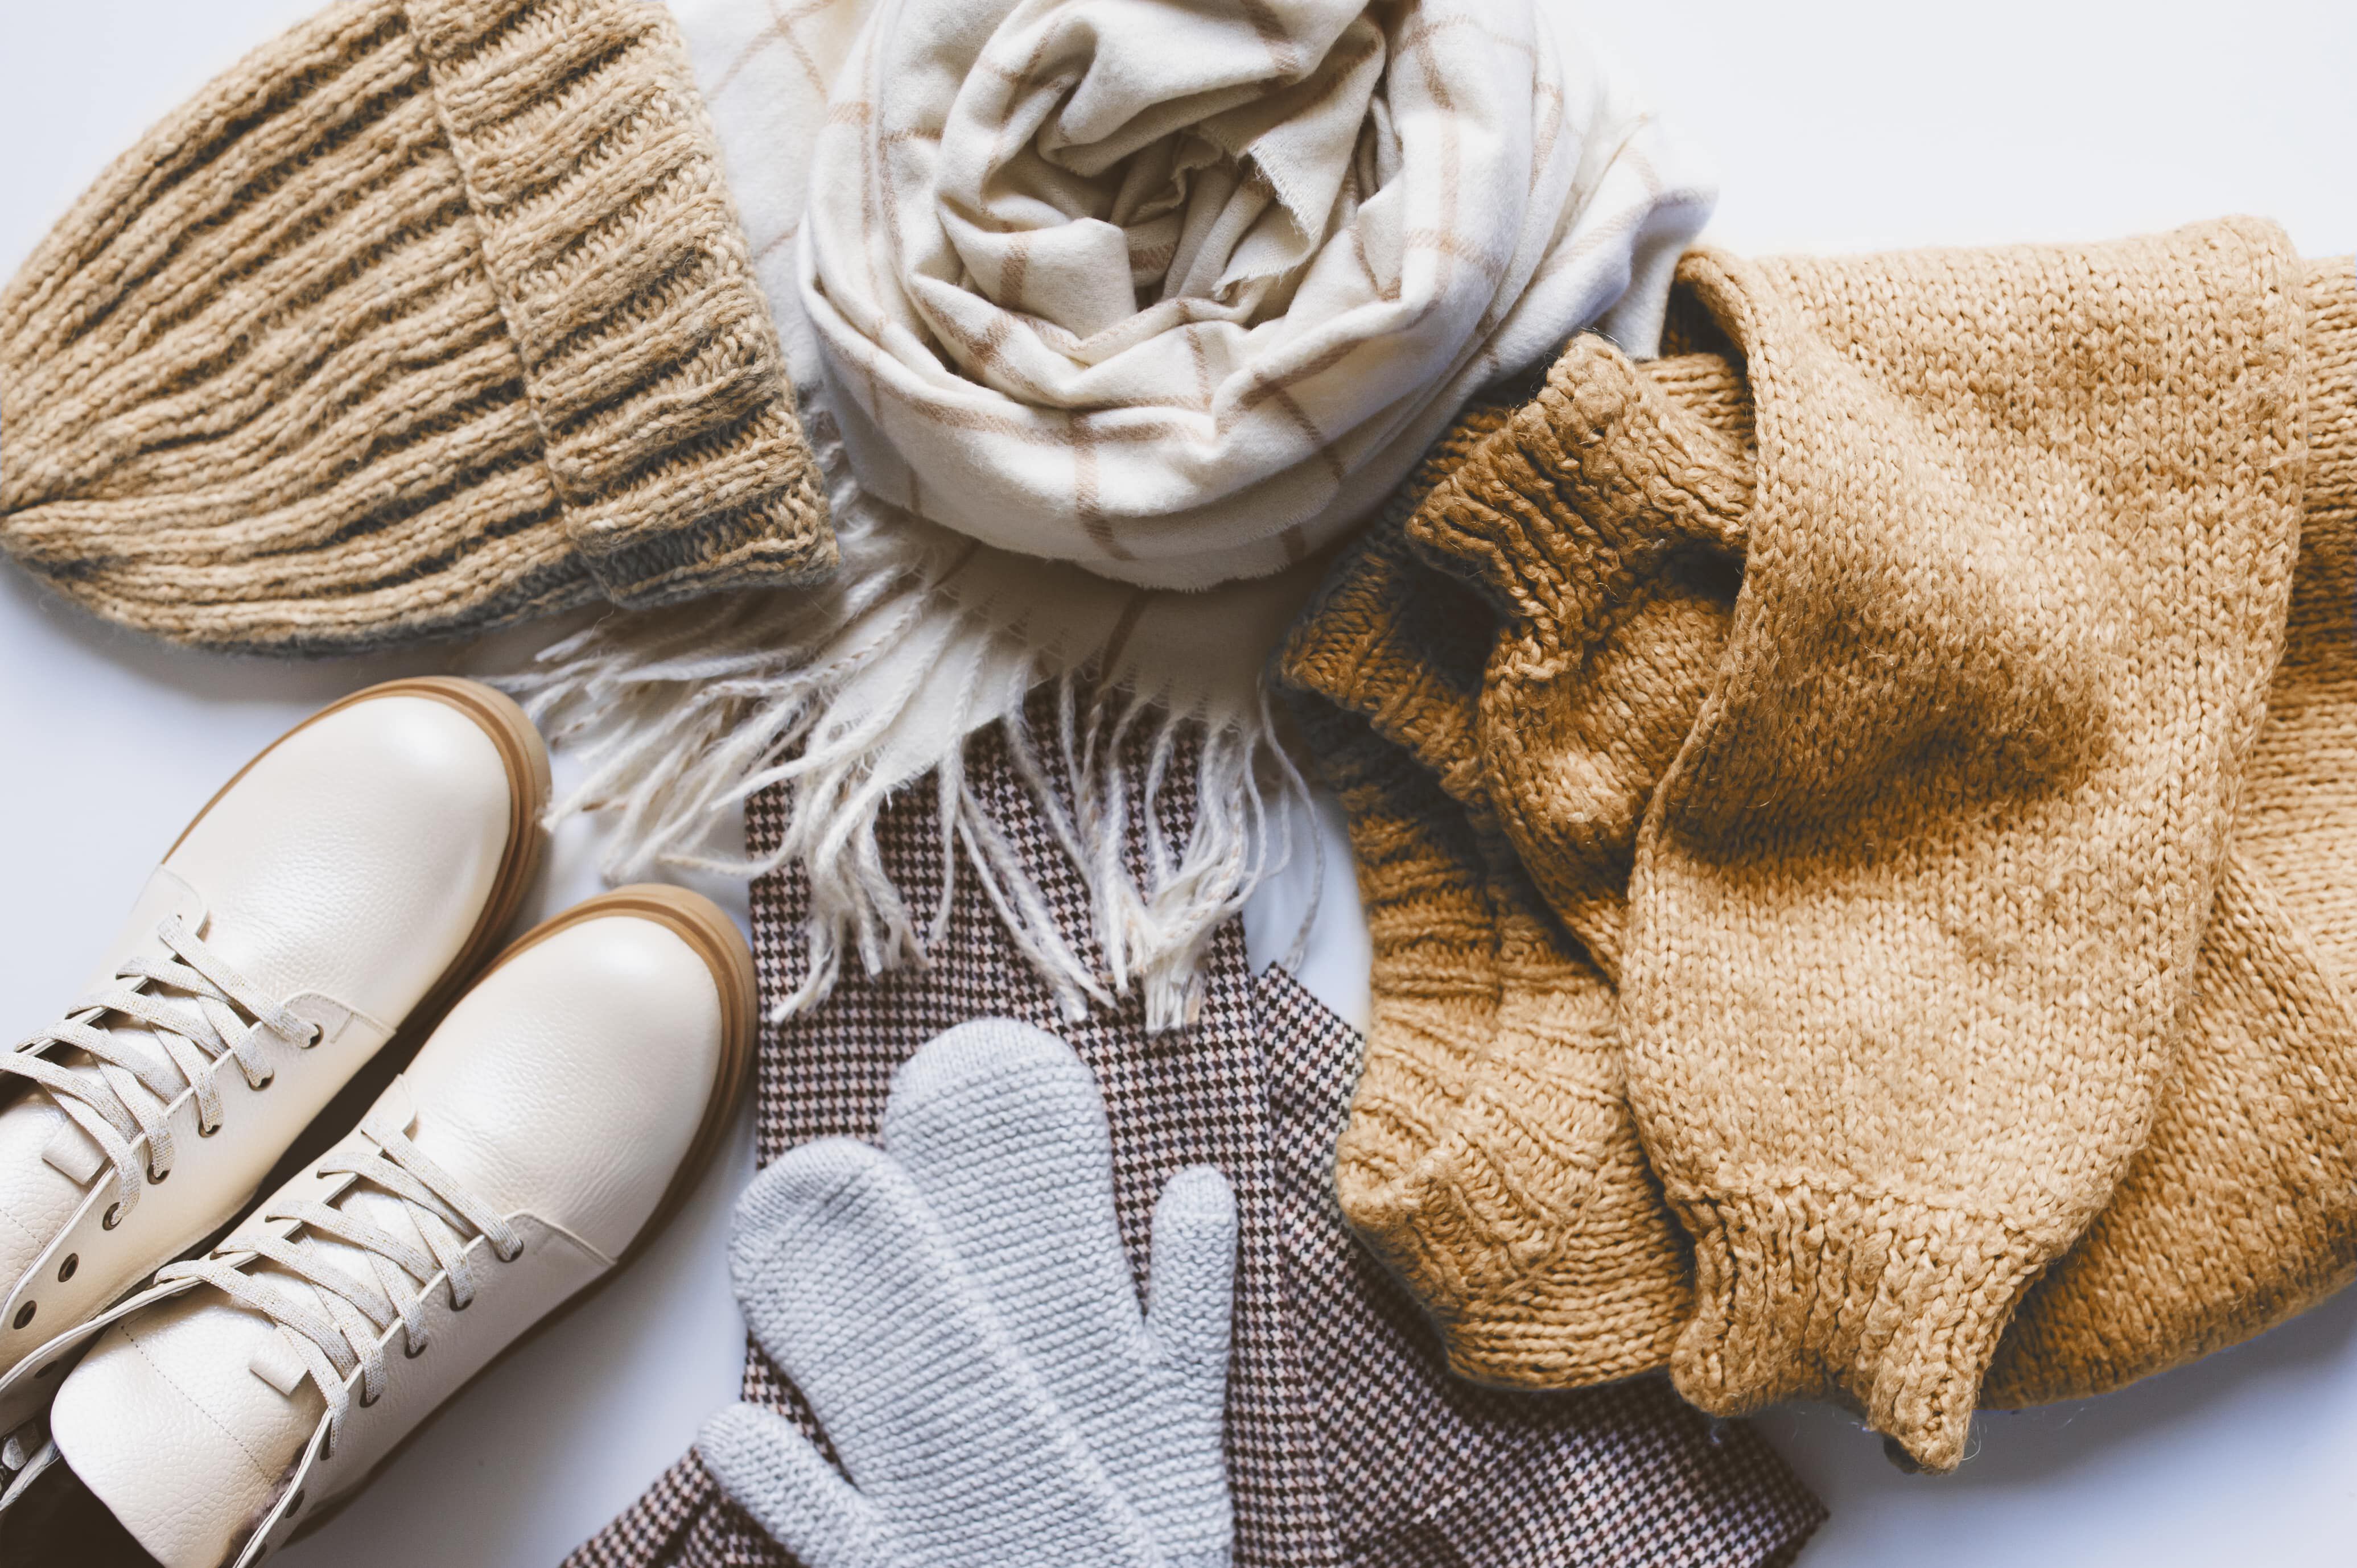 Come prendersi cura dei vestiti invernali?